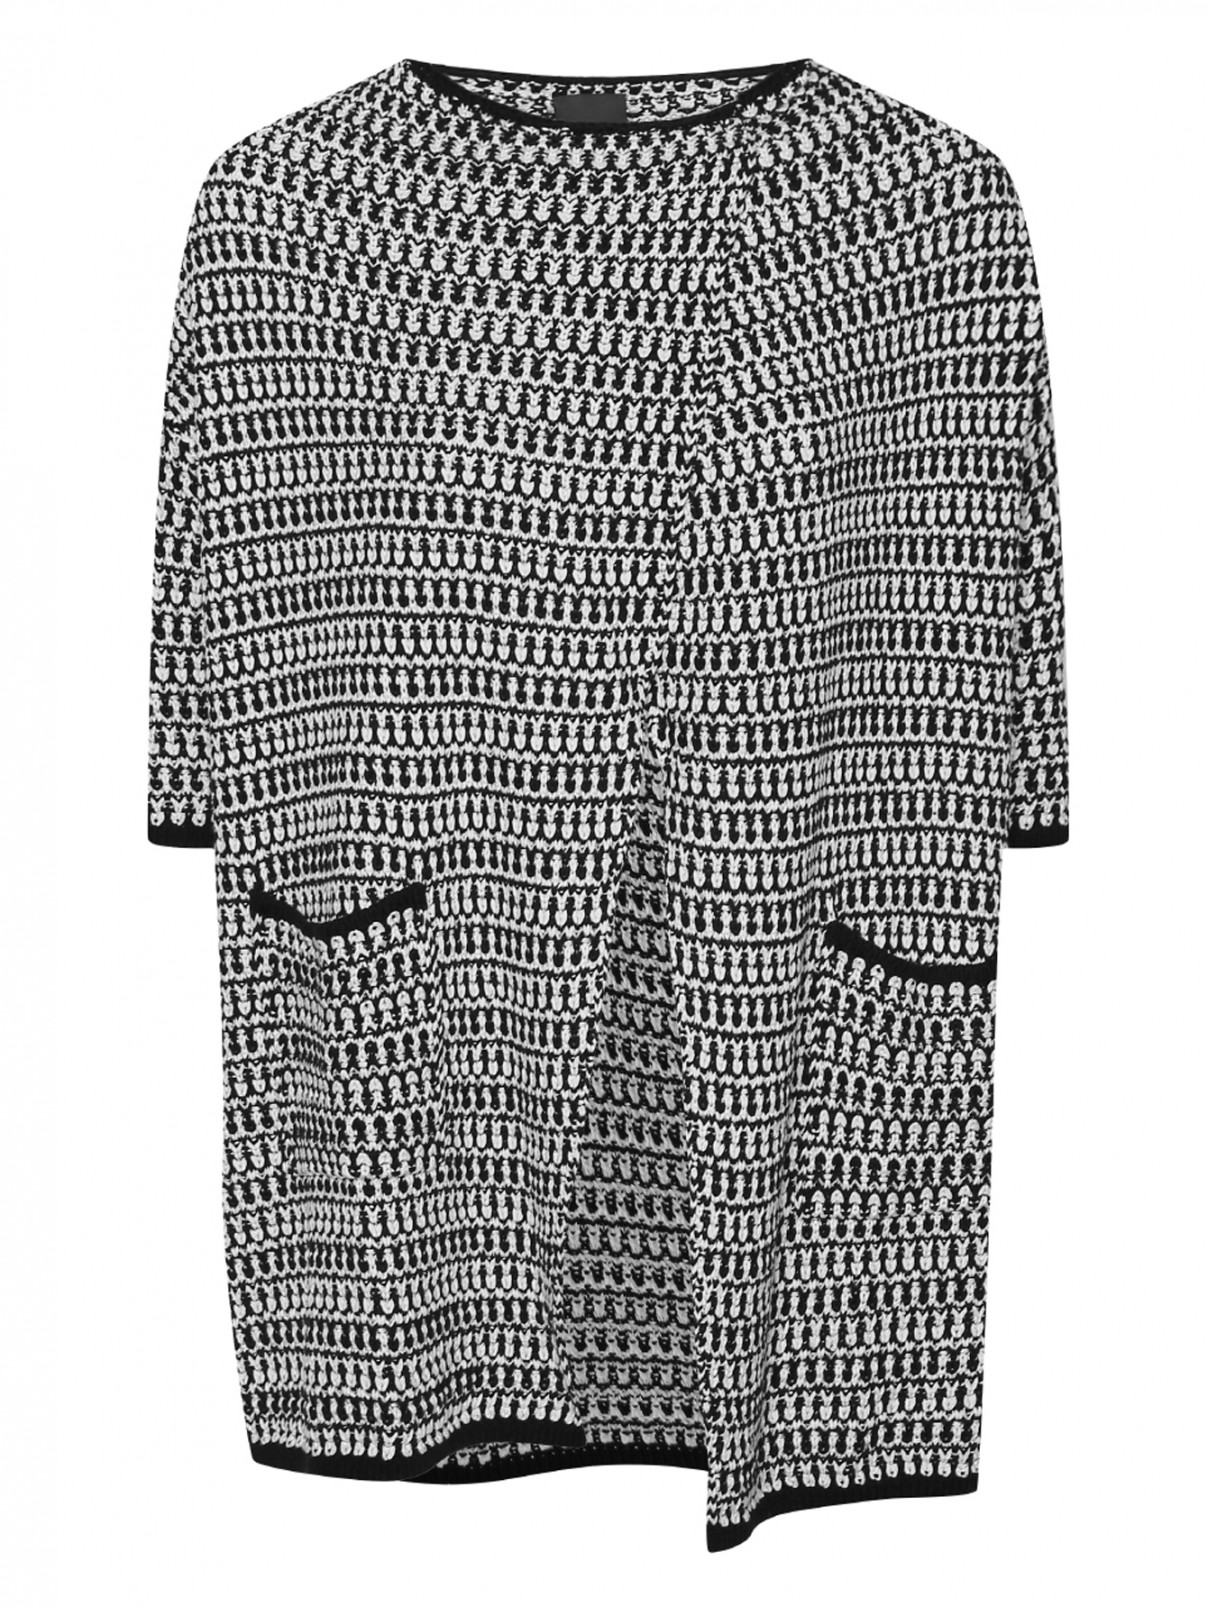 Кардиган свободного кроя с накладными карманами Marina Rinaldi  –  Общий вид  – Цвет:  Узор